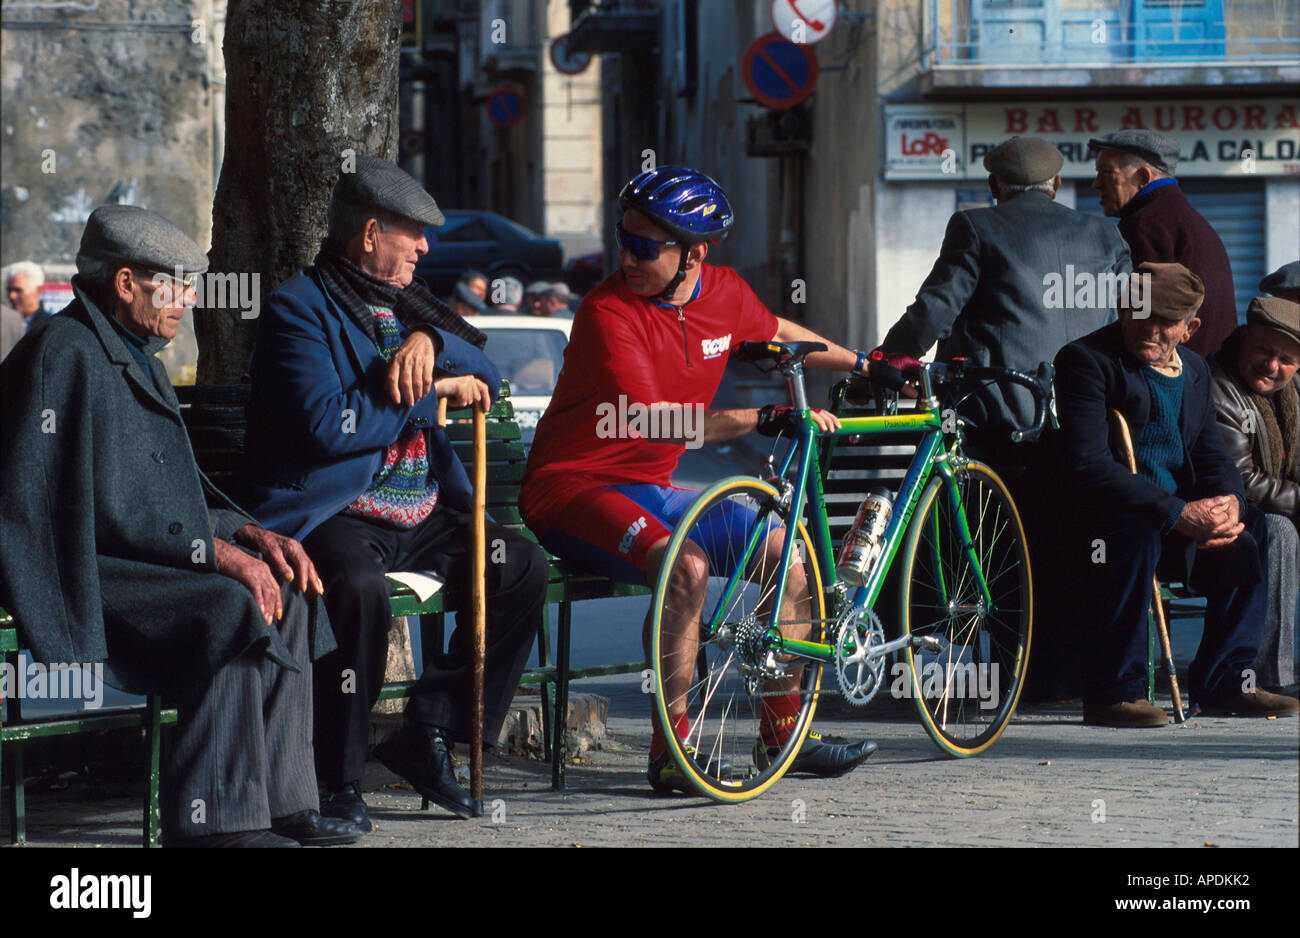 Radfahrer und alte sizilianische Maenner, Piazza von Regalbuto Sizilien, Italien Foto Stock